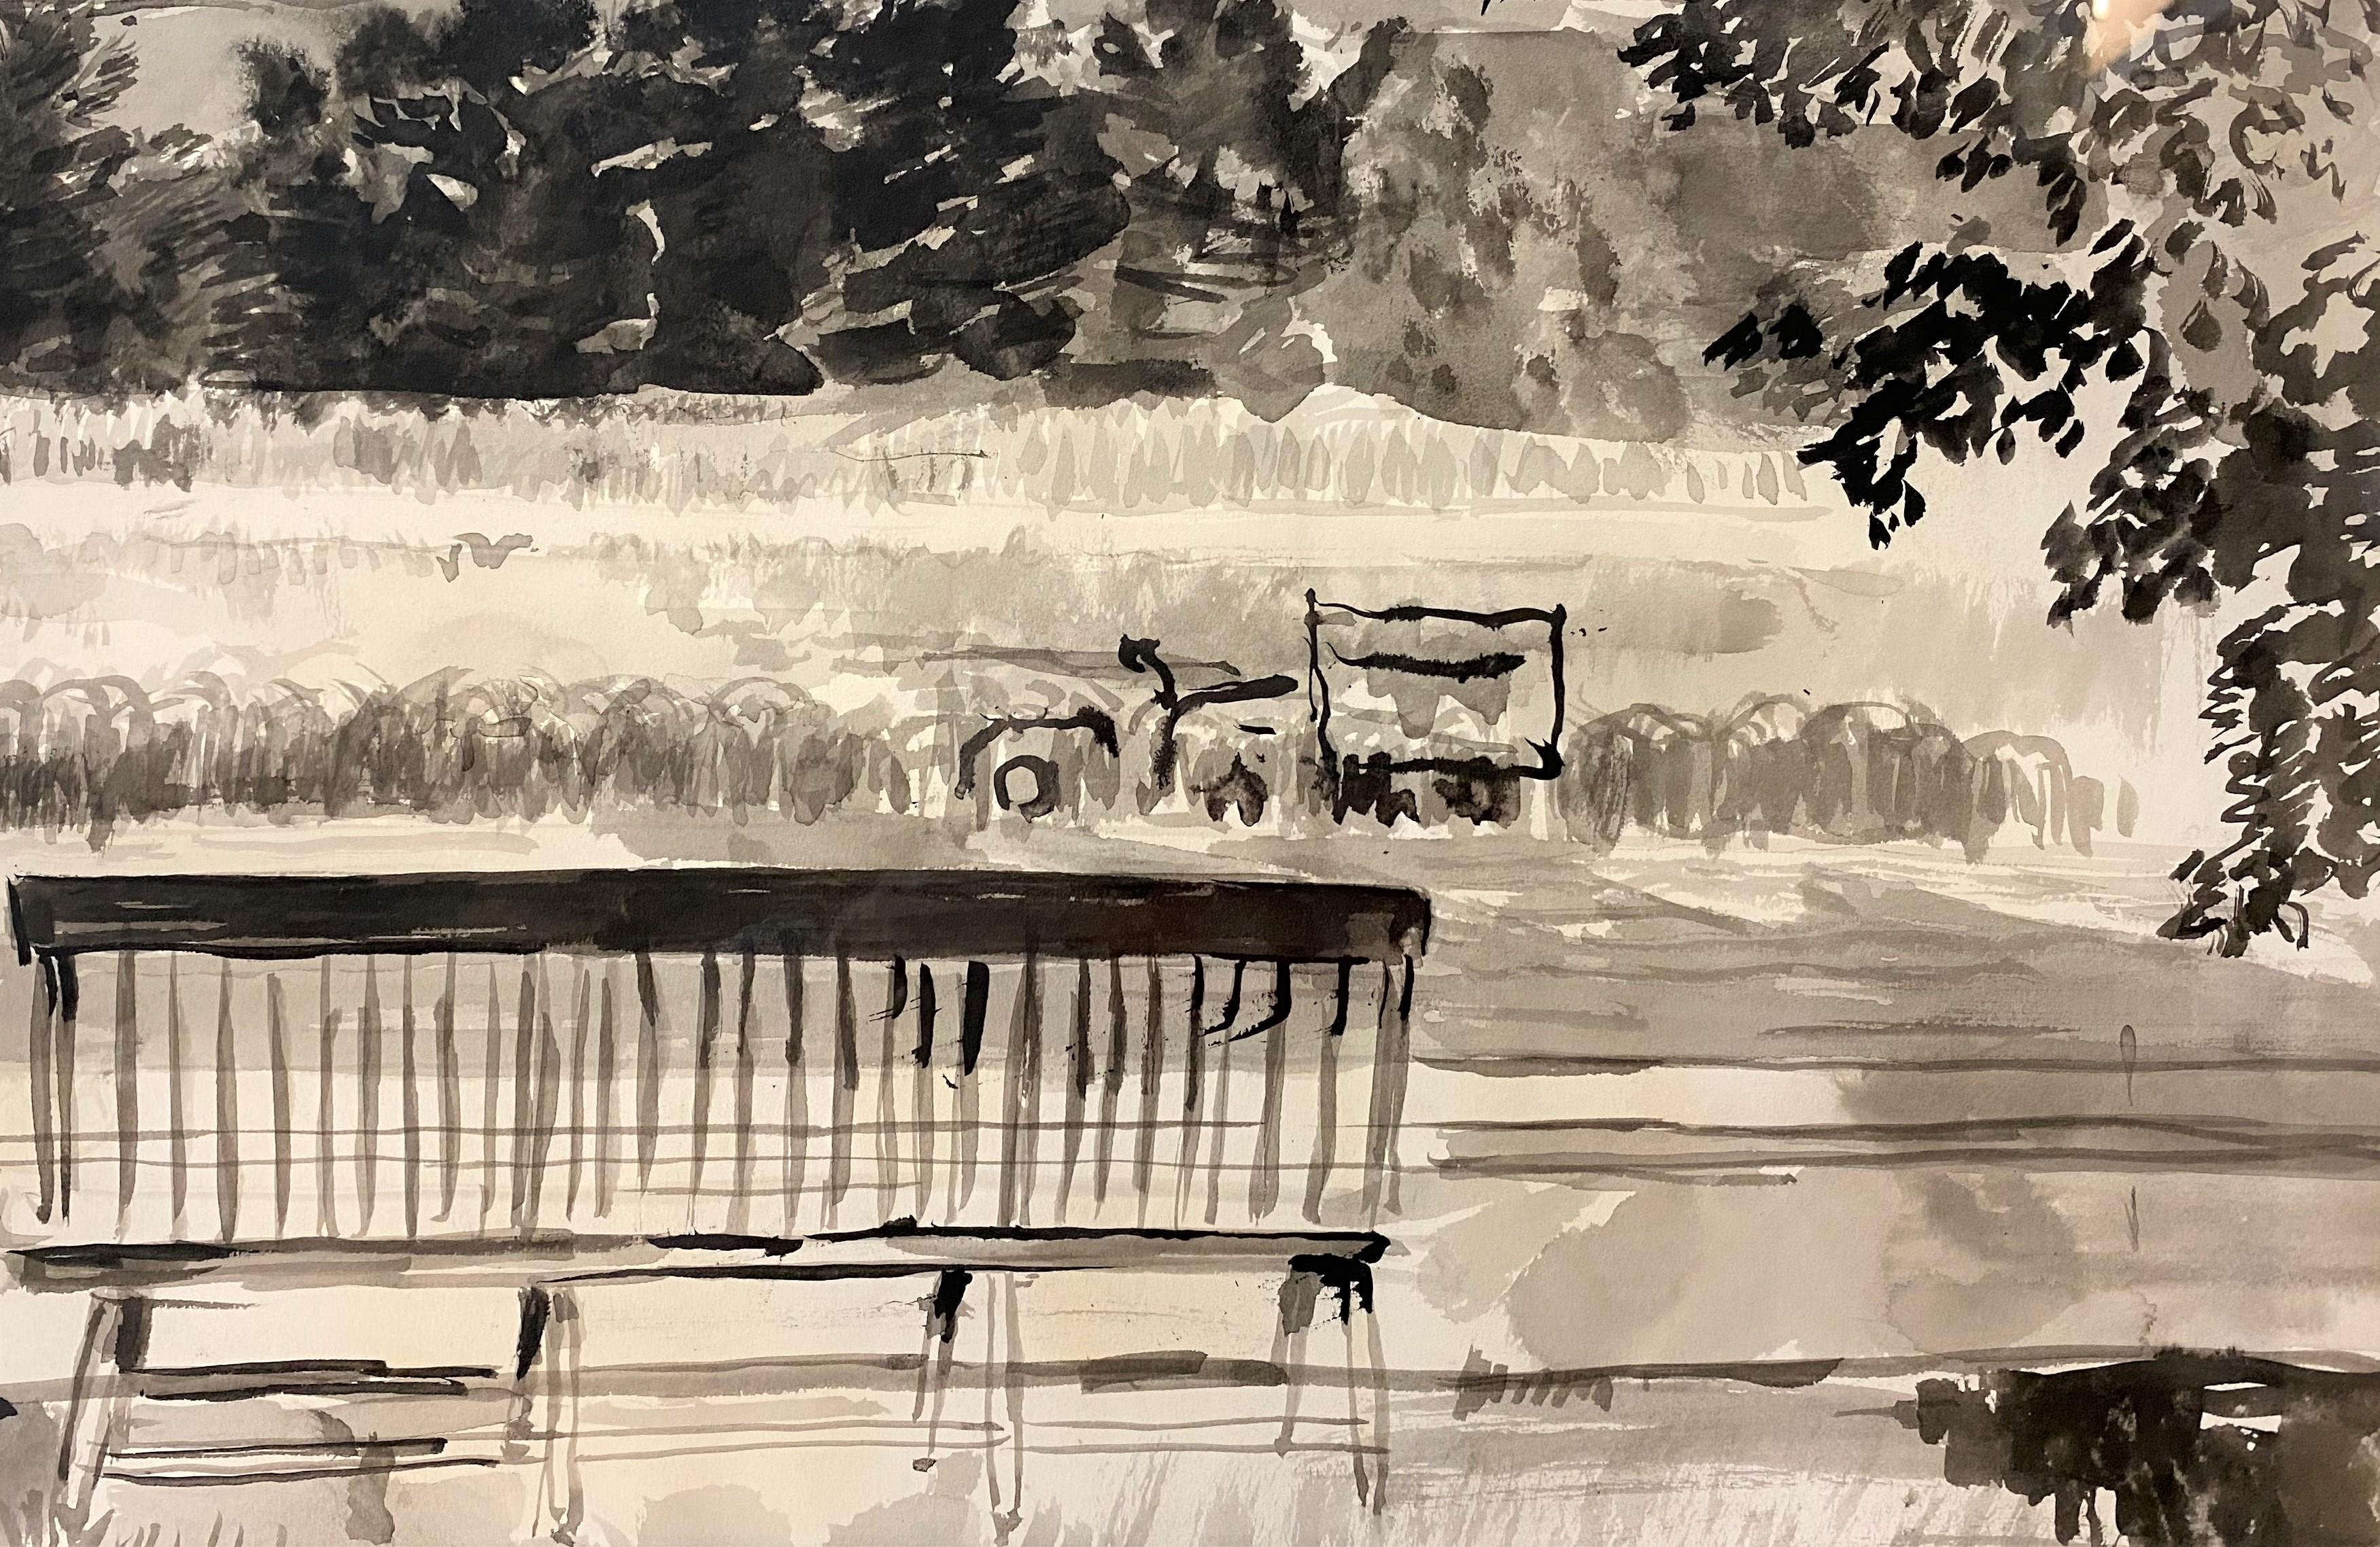 Belle aquarelle en noir et blanc représentant le Mont Monadnock dans le New Hampshire, réalisée par l'artiste américain Gifford Beal (1879-1956). Né à New York, Marin a étudié pendant de nombreuses années auprès de William Merritt Chase et s'est